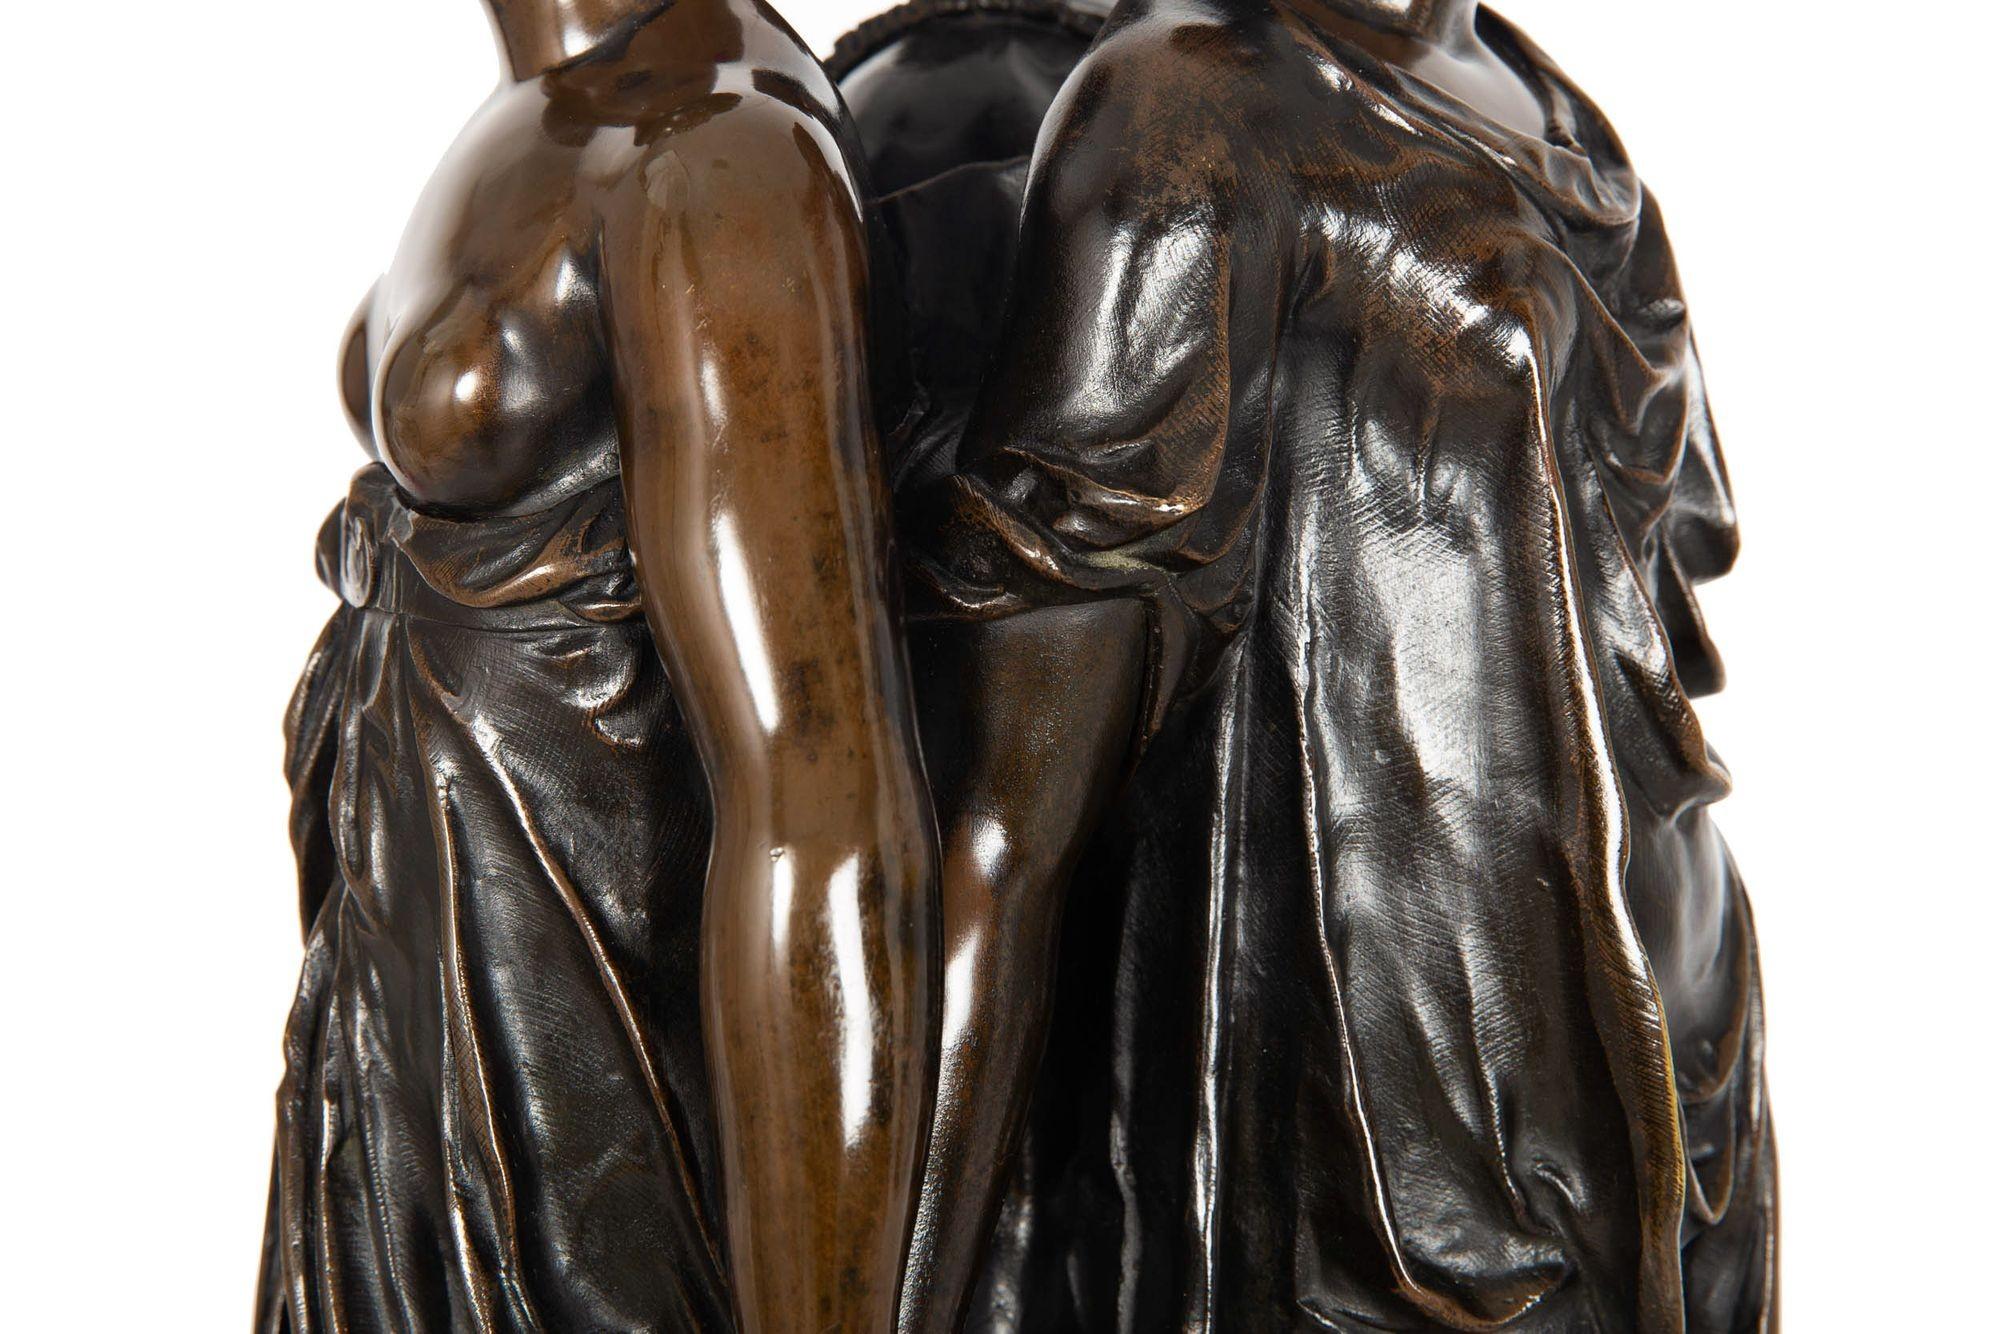 French Antique Bronze Sculpture “Three Graces” after Germain Pilon For Sale 6